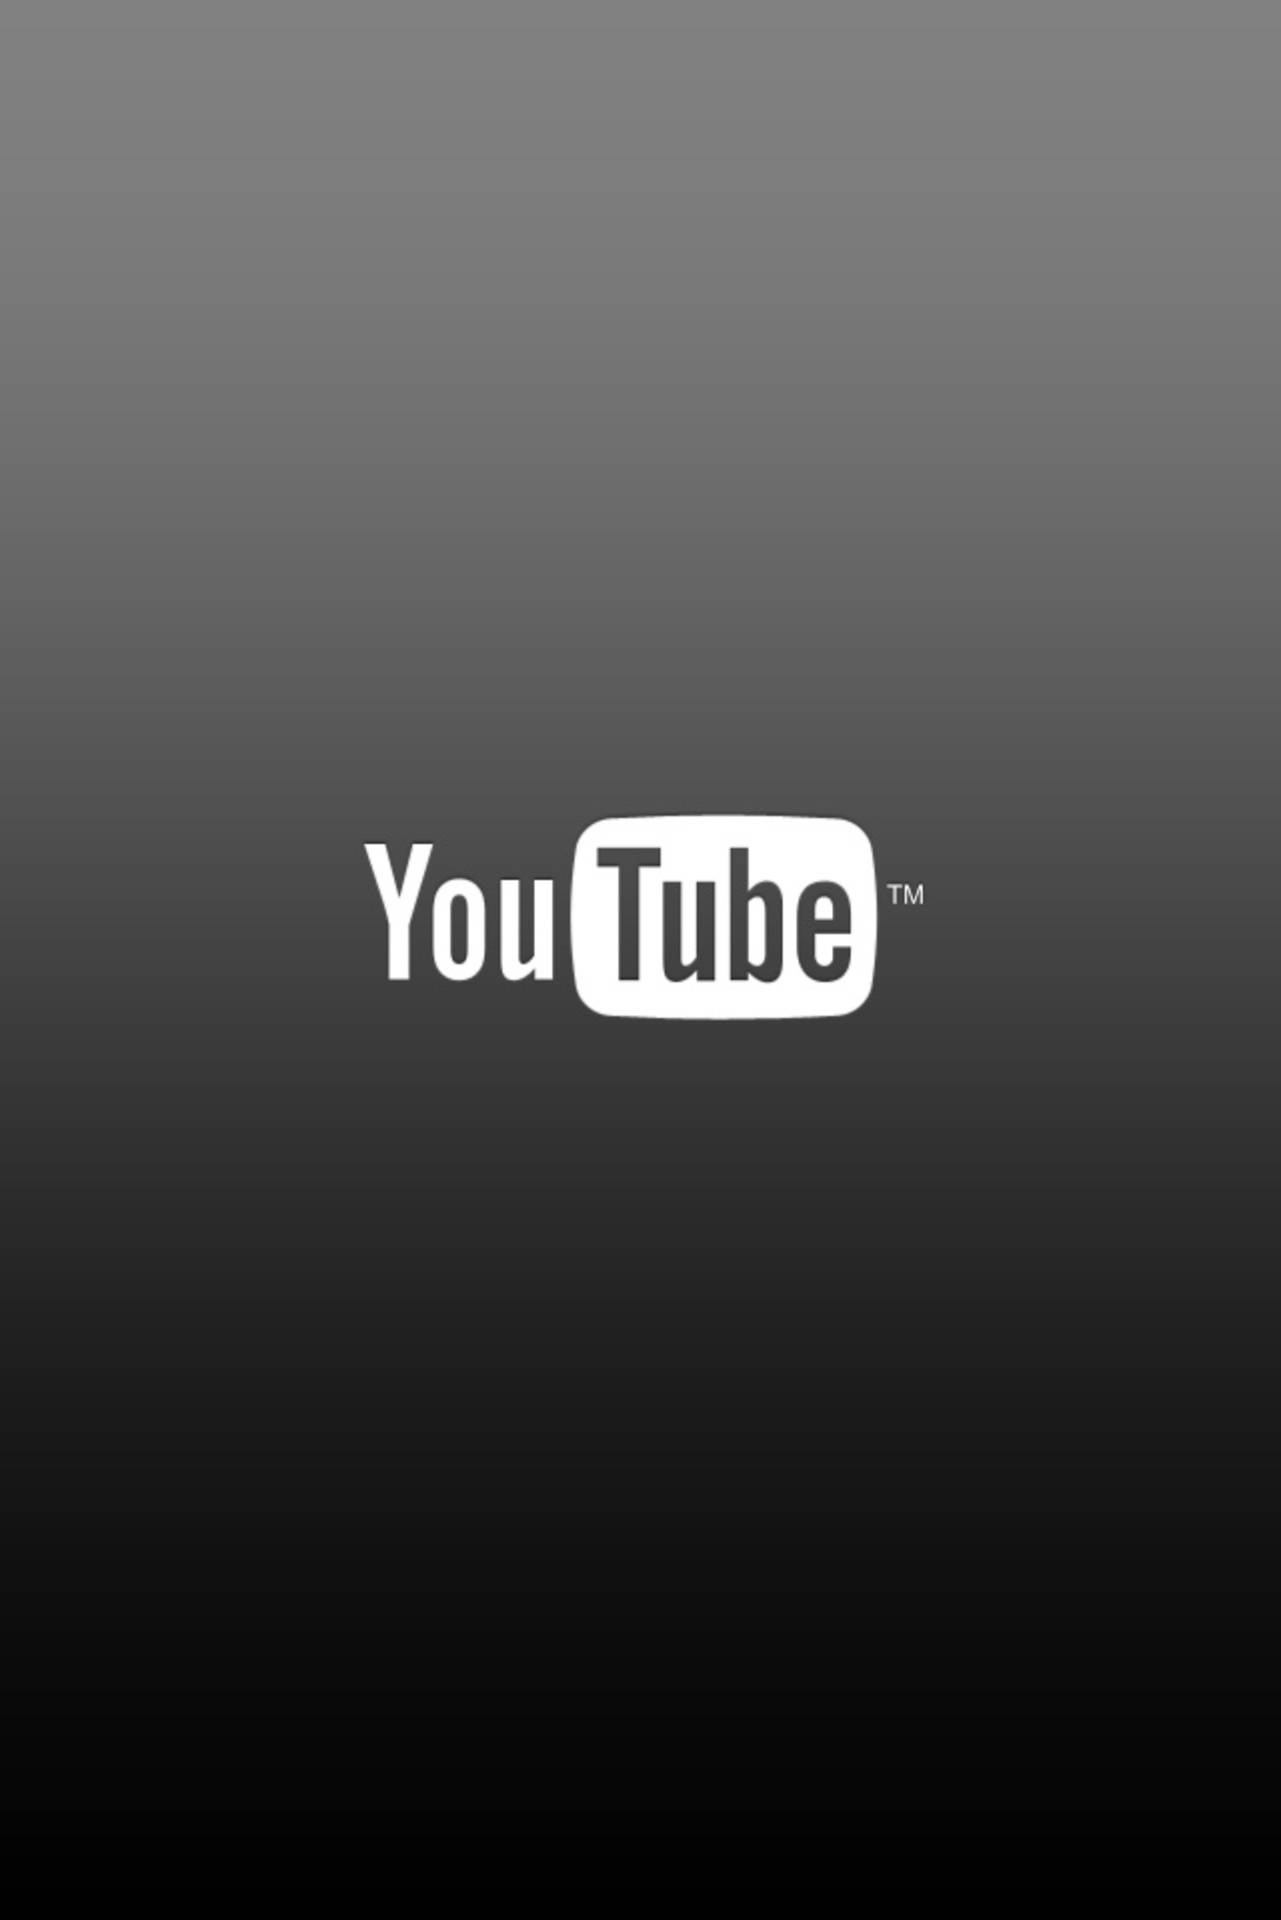 Ordinary Youtube Logo Background